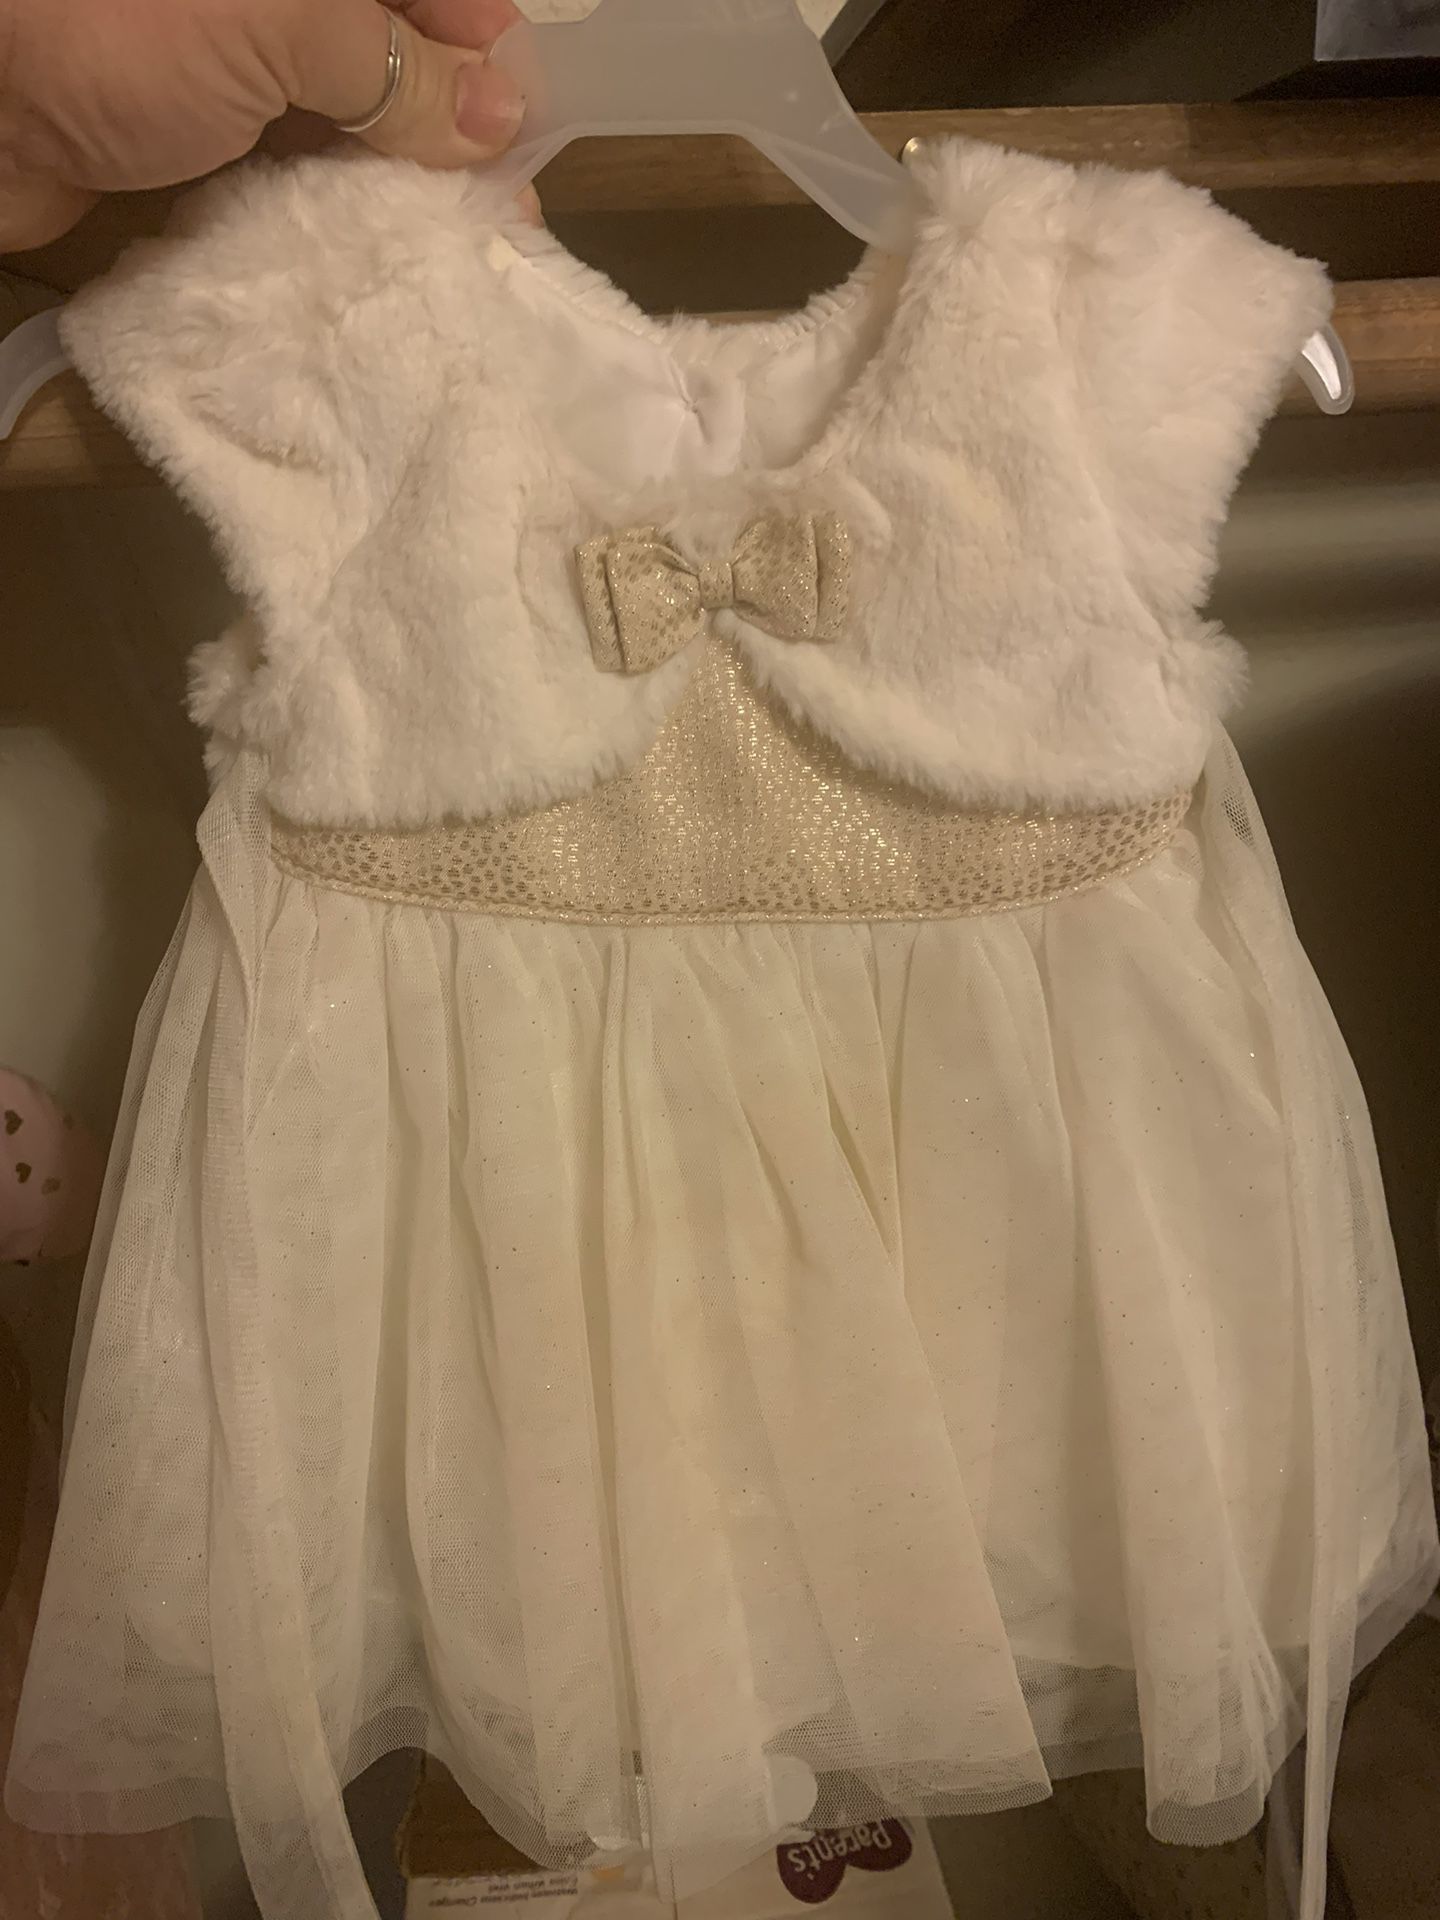 Súper Cute Baby Girl Fancy Dress 6 Months 